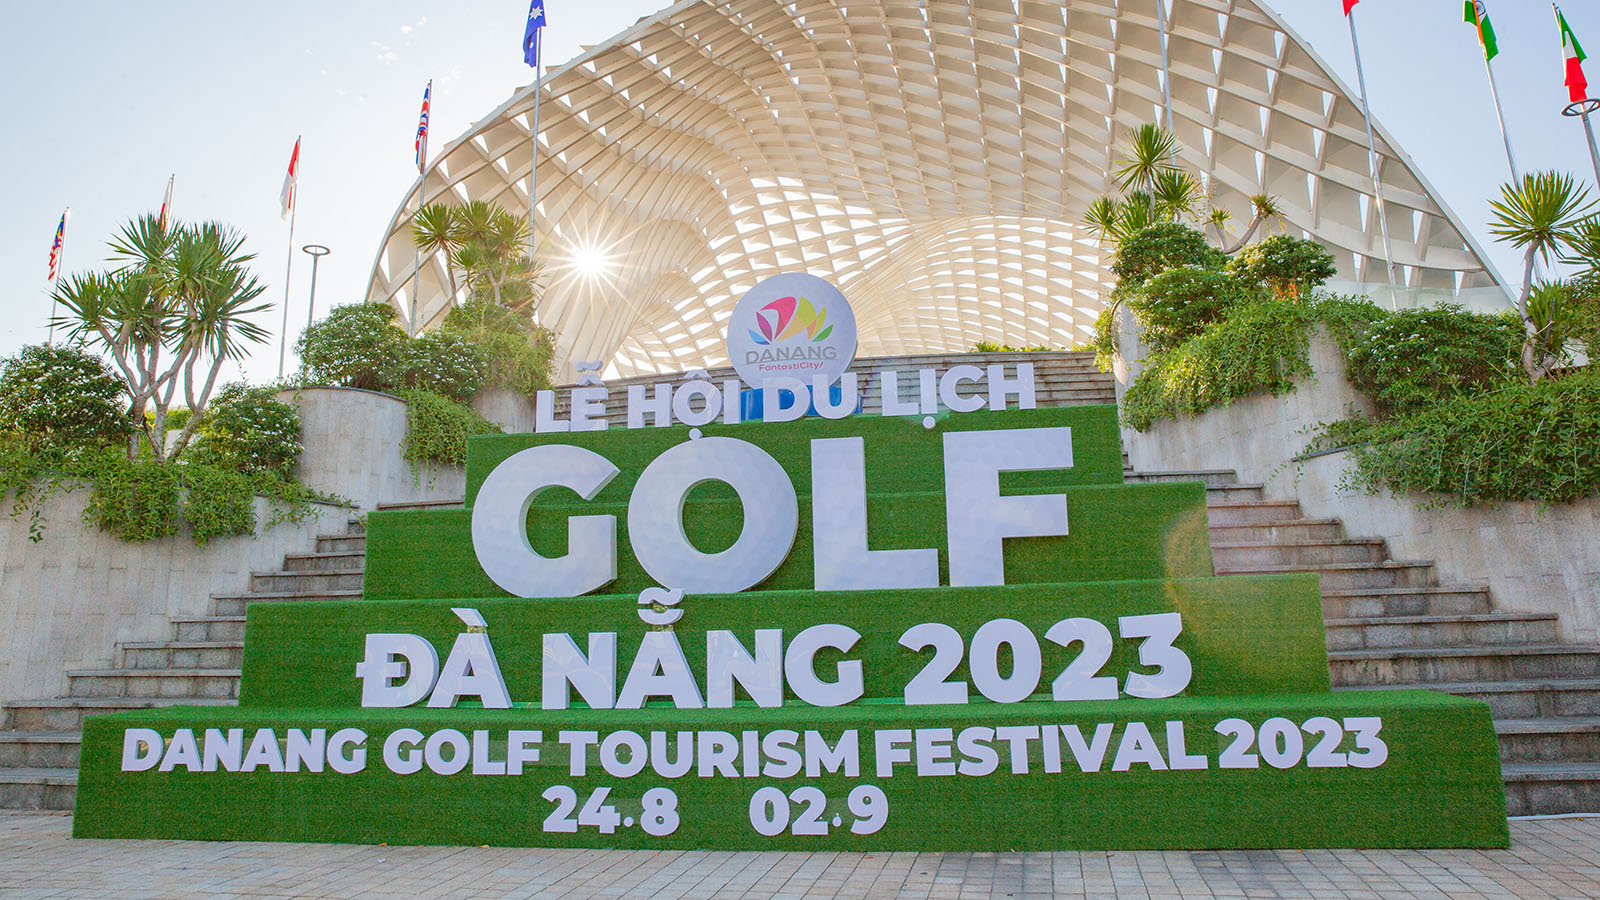 Le Hoi Du Lich Golf Da Nang 2023 Dua The Thao Golf Den Gan Hon Voi Cong Chung 011